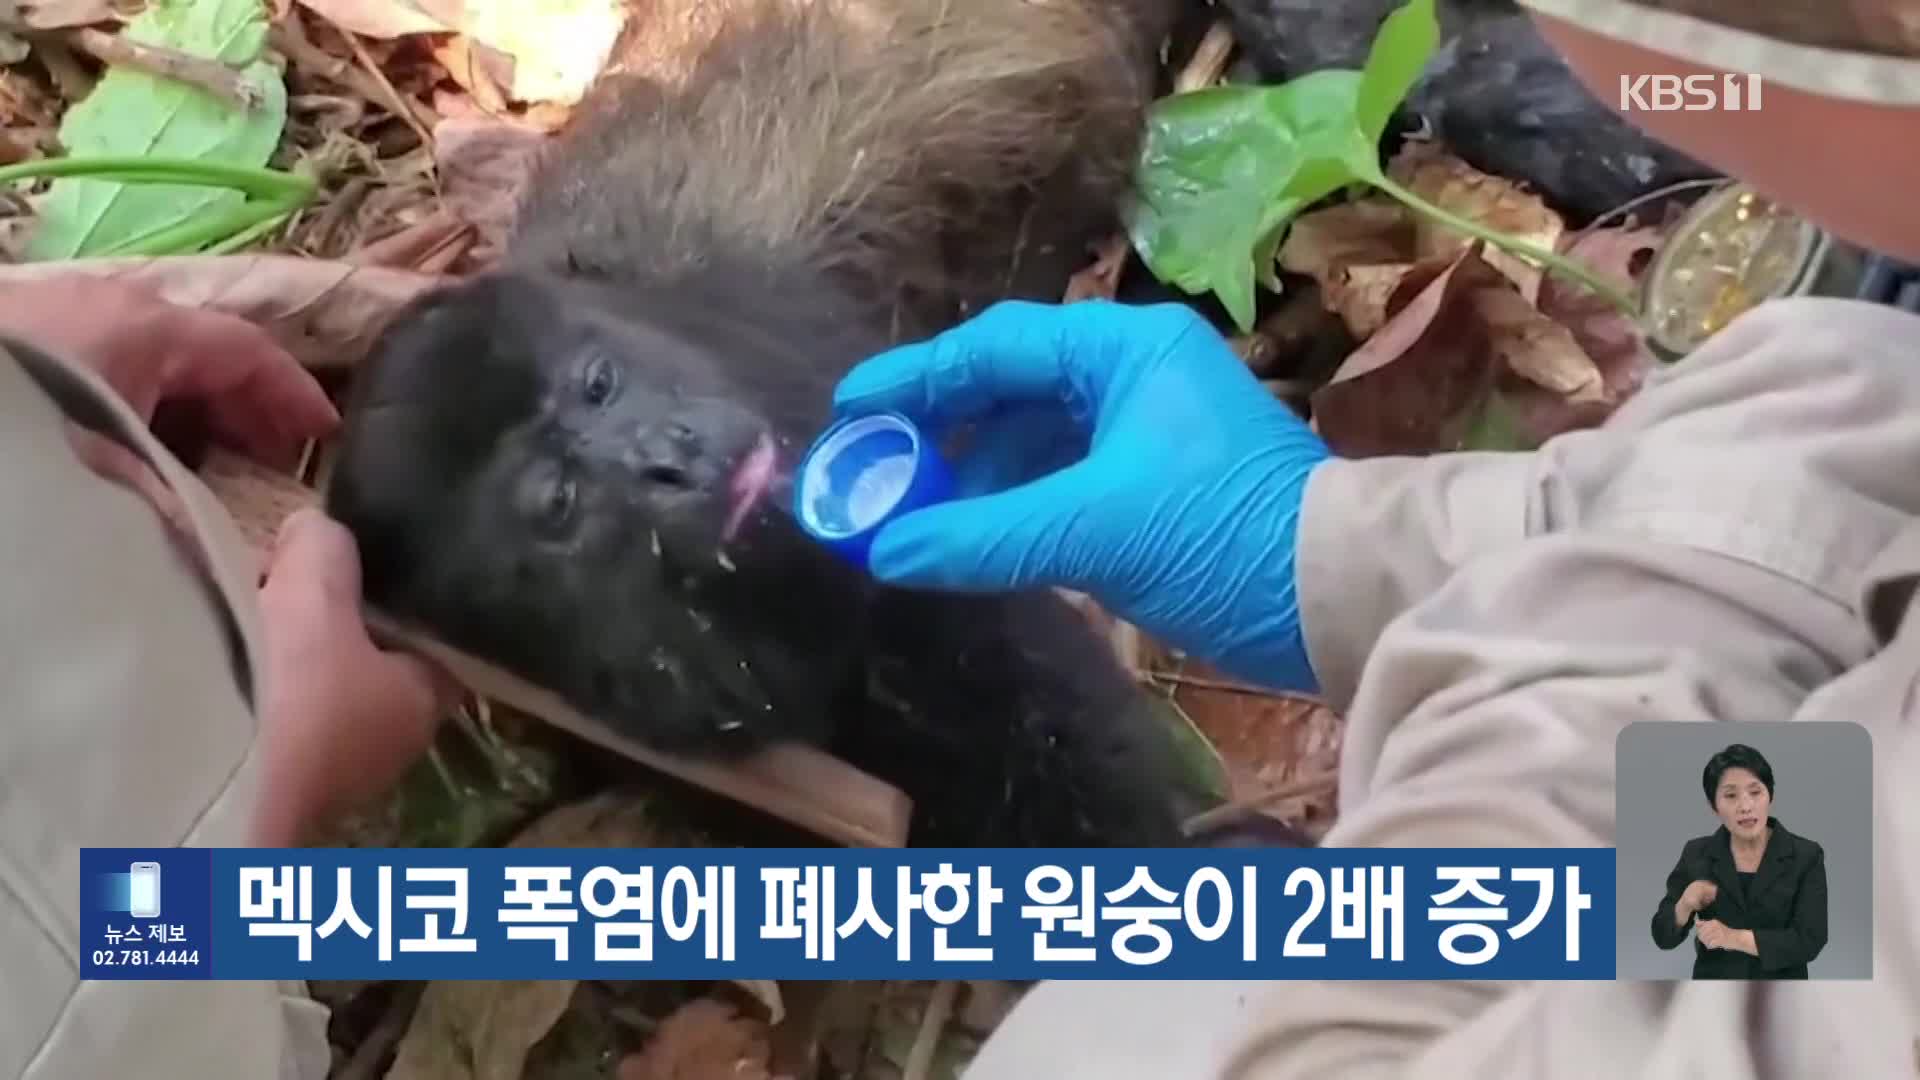 [기후는 말한다] 멕시코 폭염에 폐사한 원숭이 2배 증가